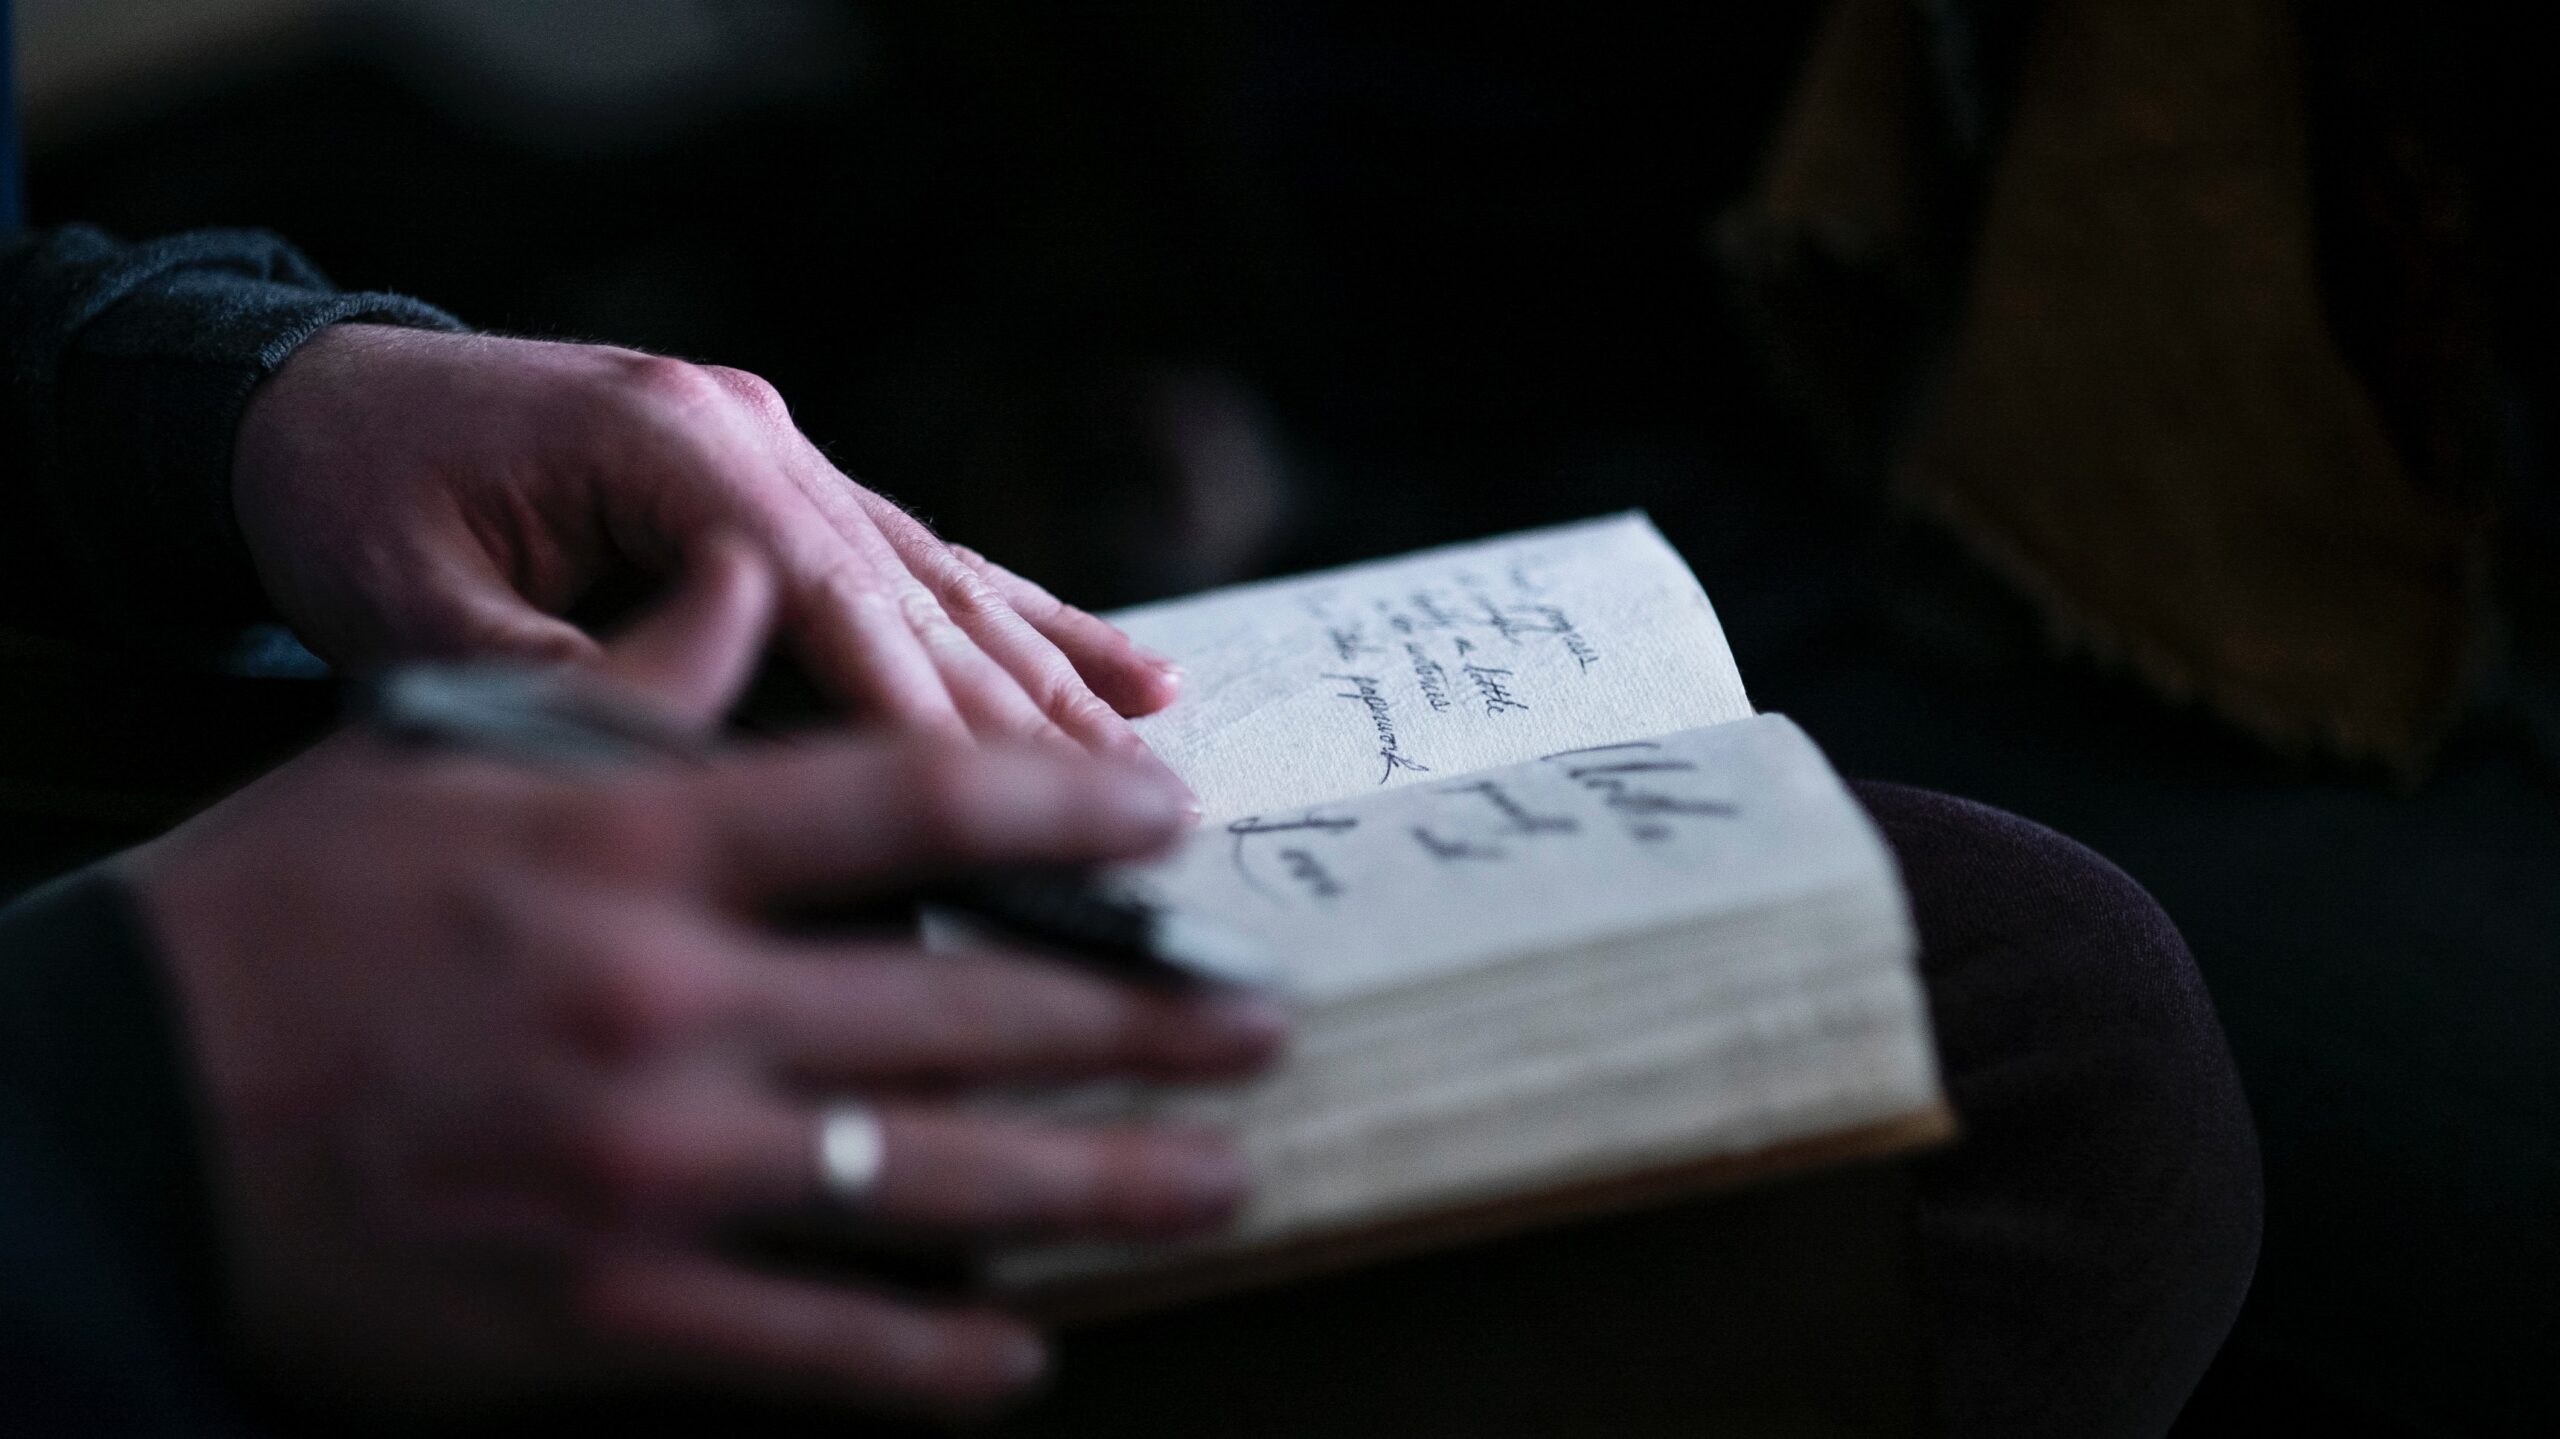 woman's hands flipping through hand written journal